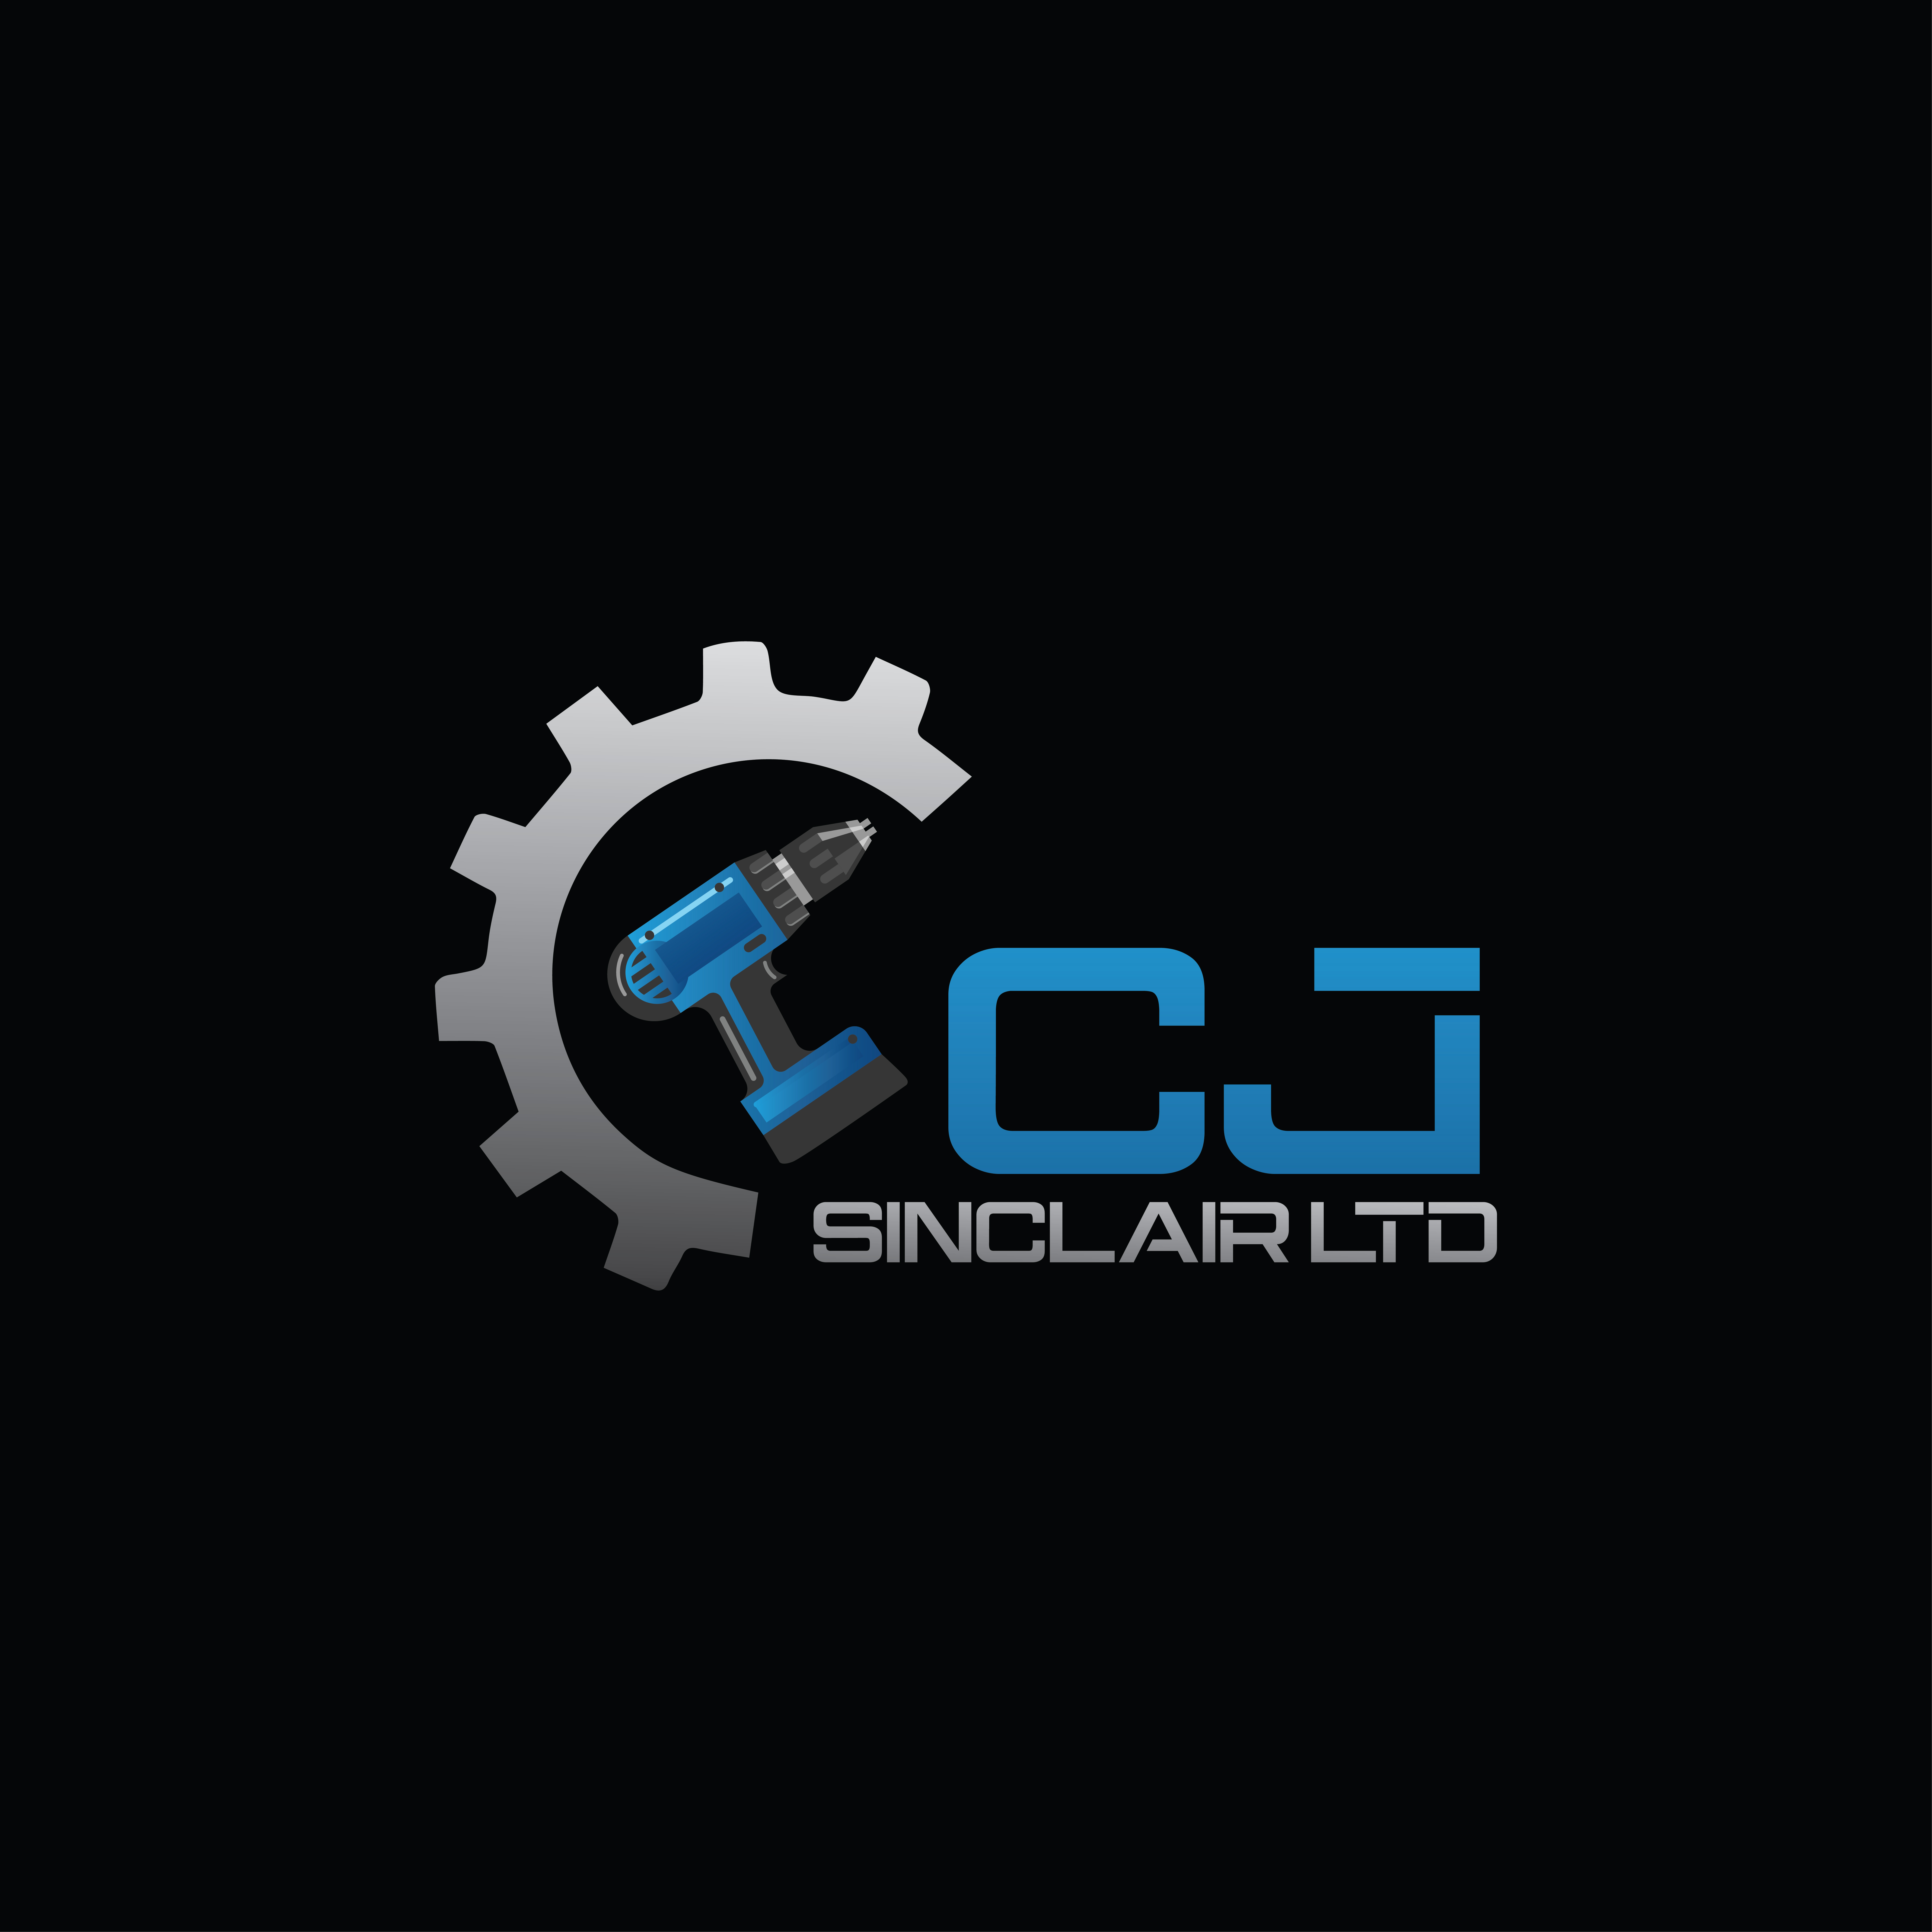 C.J. Sinclair Ltd - is using www.repero.me, a repair shop software